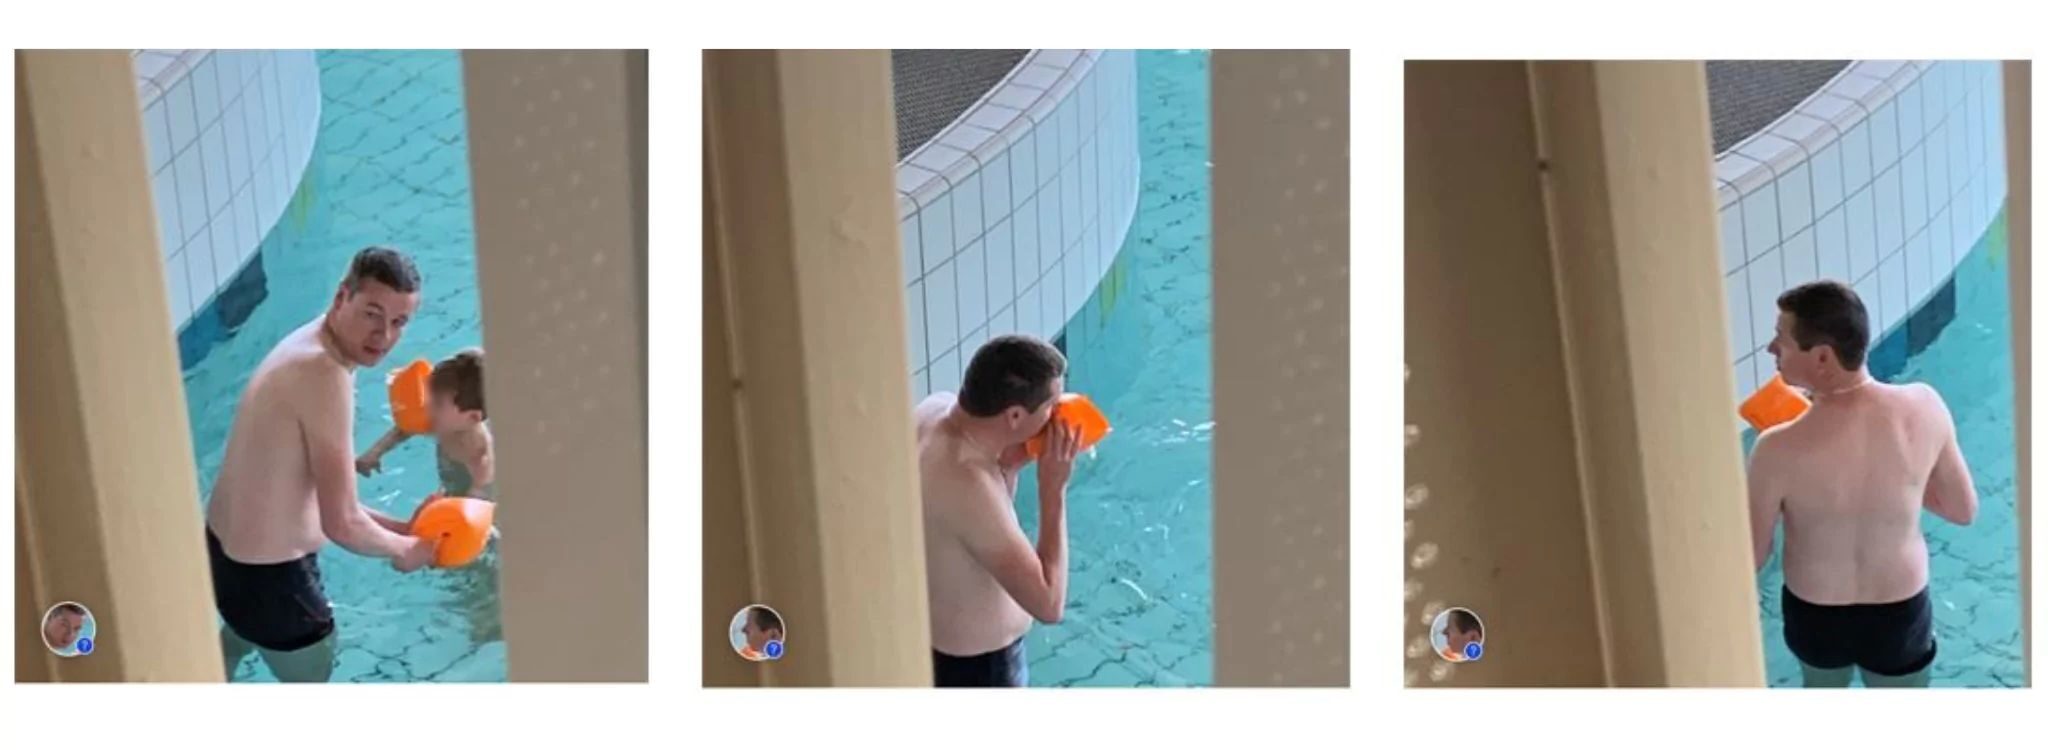 À Saverne, un élu en charge des équipements sportifs utilise la piscine publique quand elle est fermée